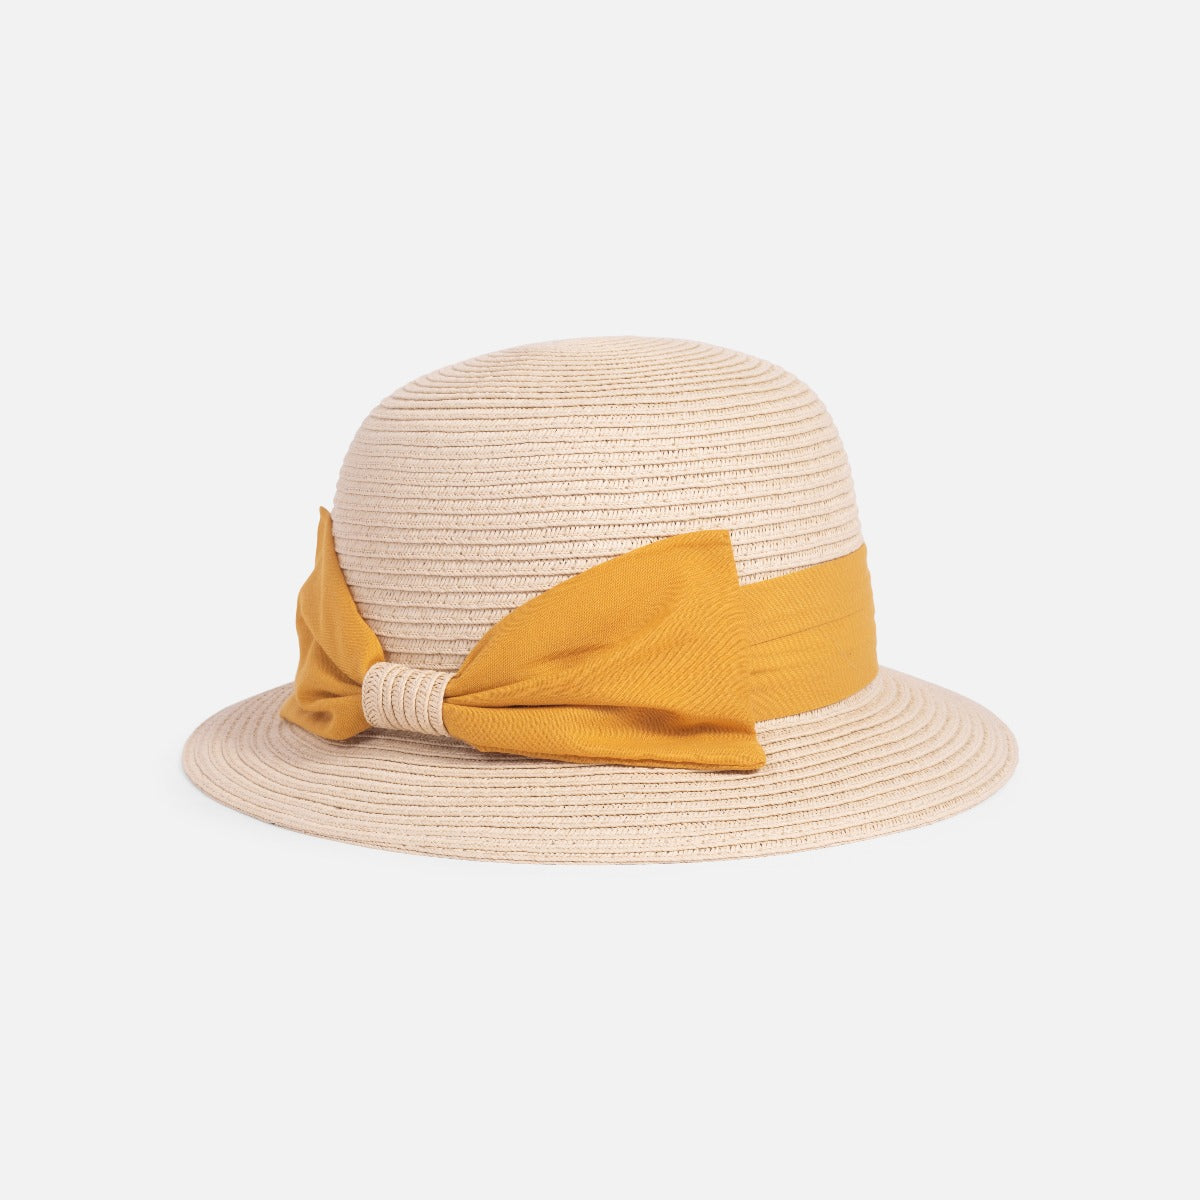 Chapeau cloche beige en paille ajustable avec ruban de tissu jaune